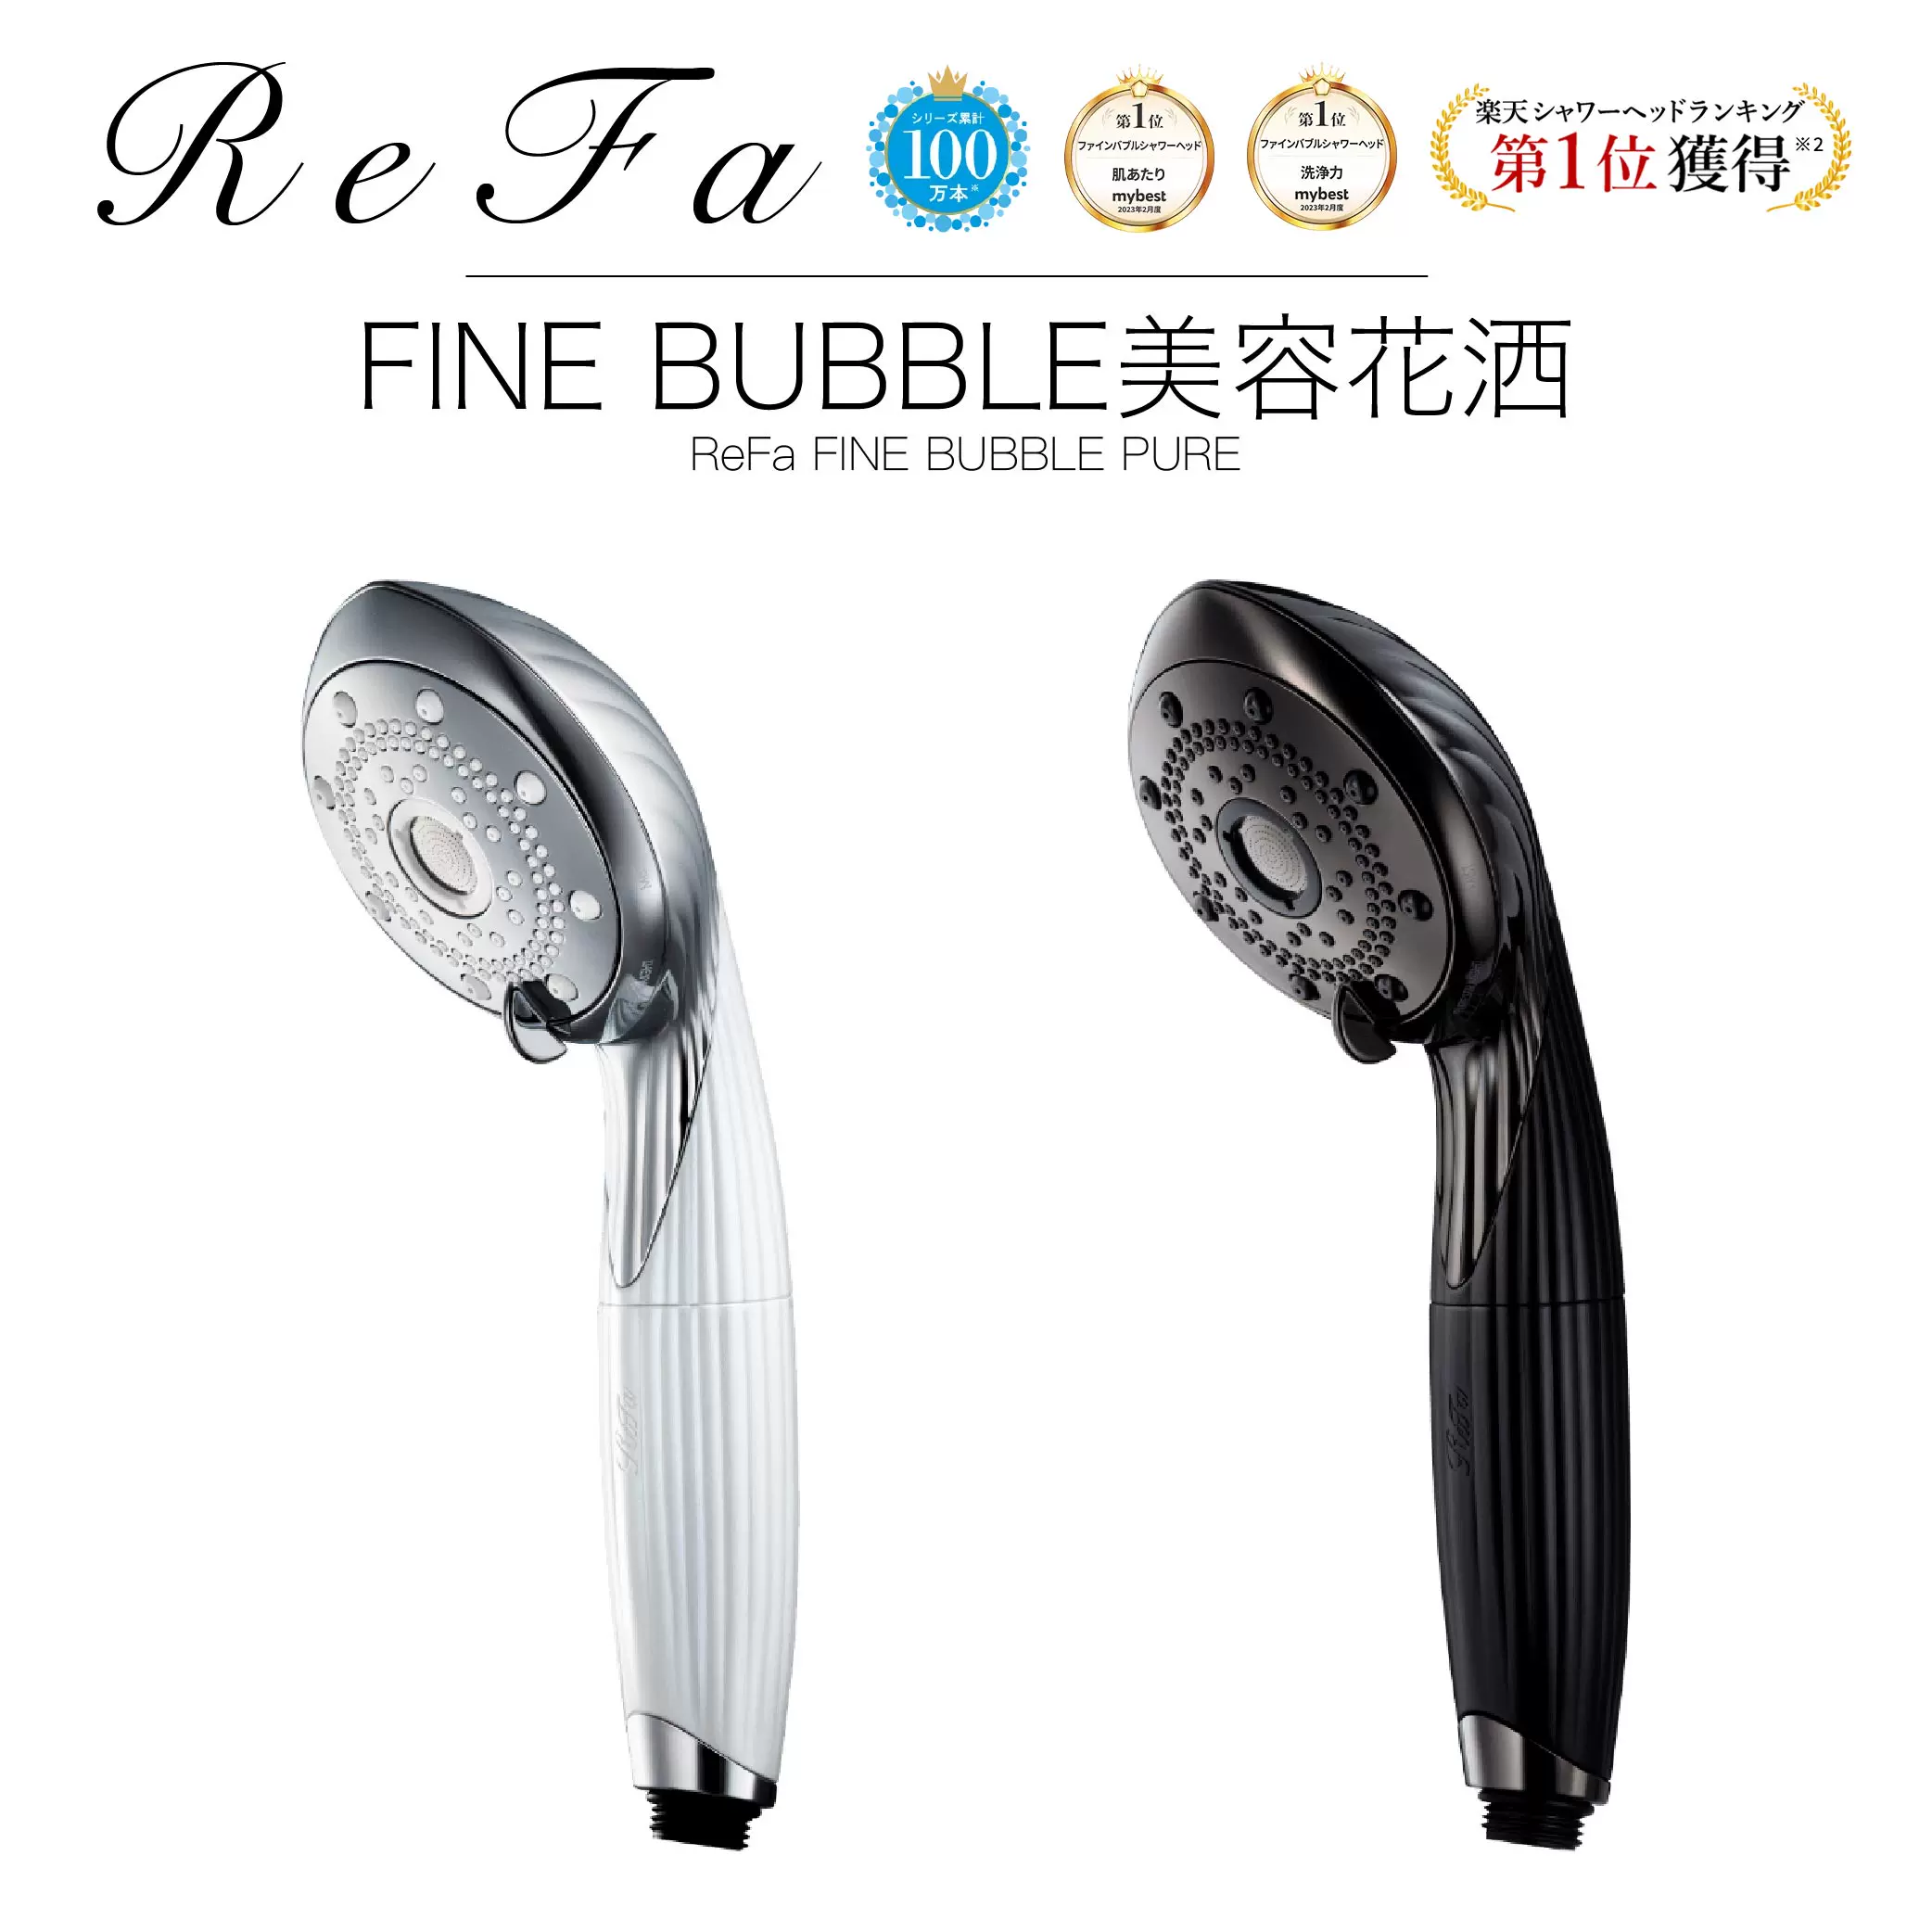 日本直郵新款ReFa FINE BUBBLE PURE美容護膚去除污垢花灑微氣泡-Taobao